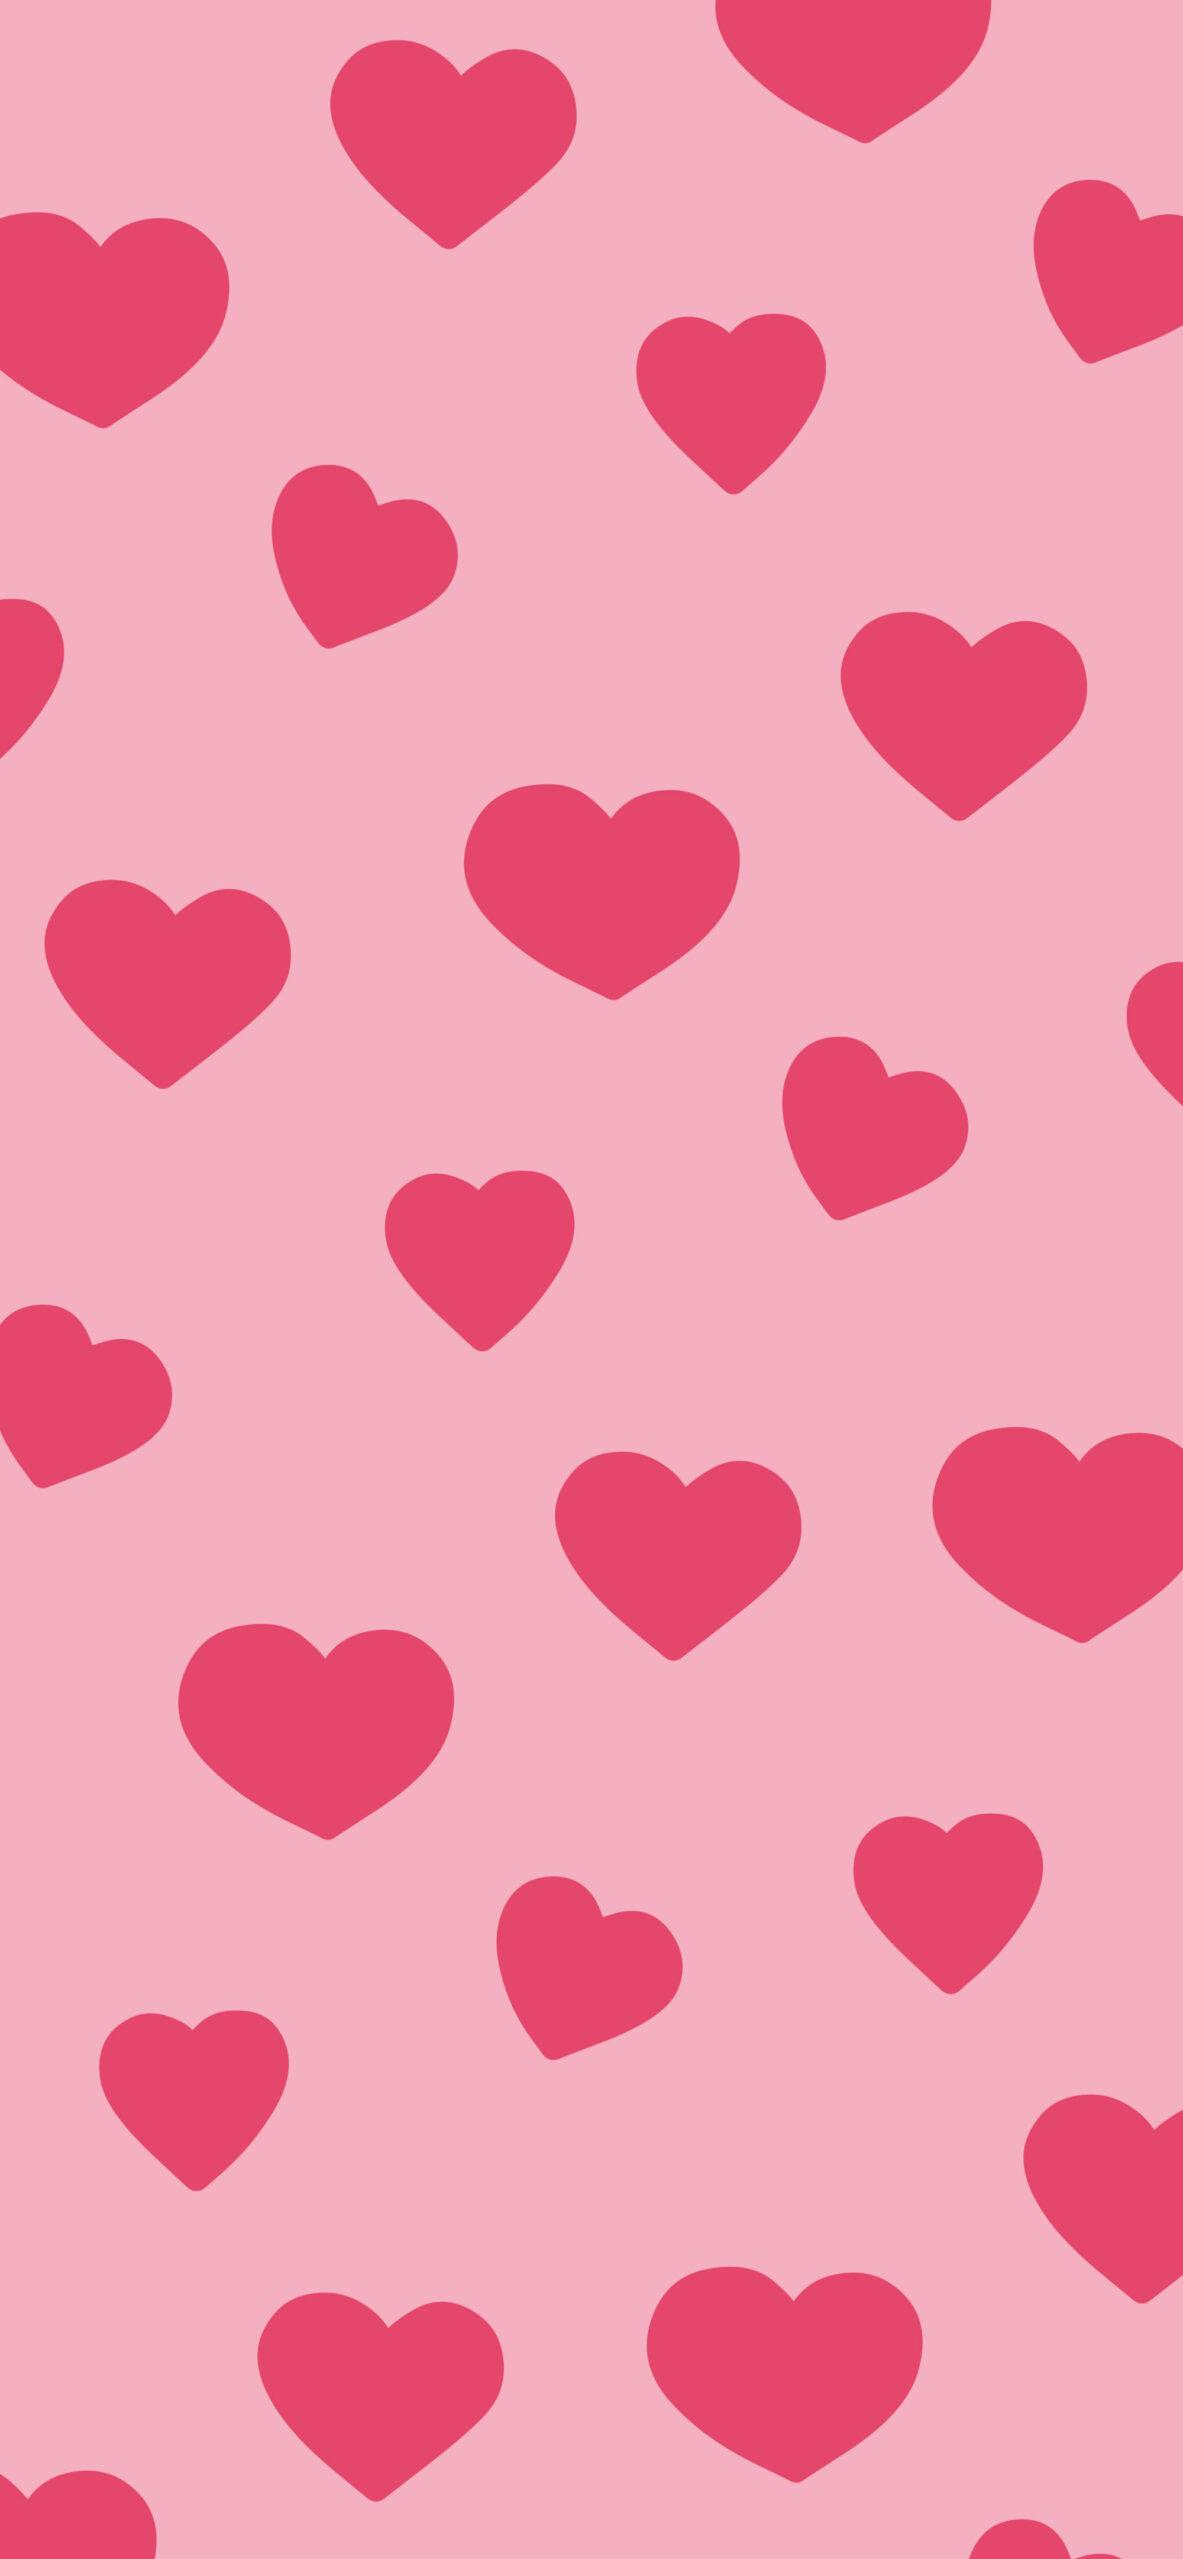 Love Hearts Pattern Pink Wallpaper Aesthetic Heart 4k